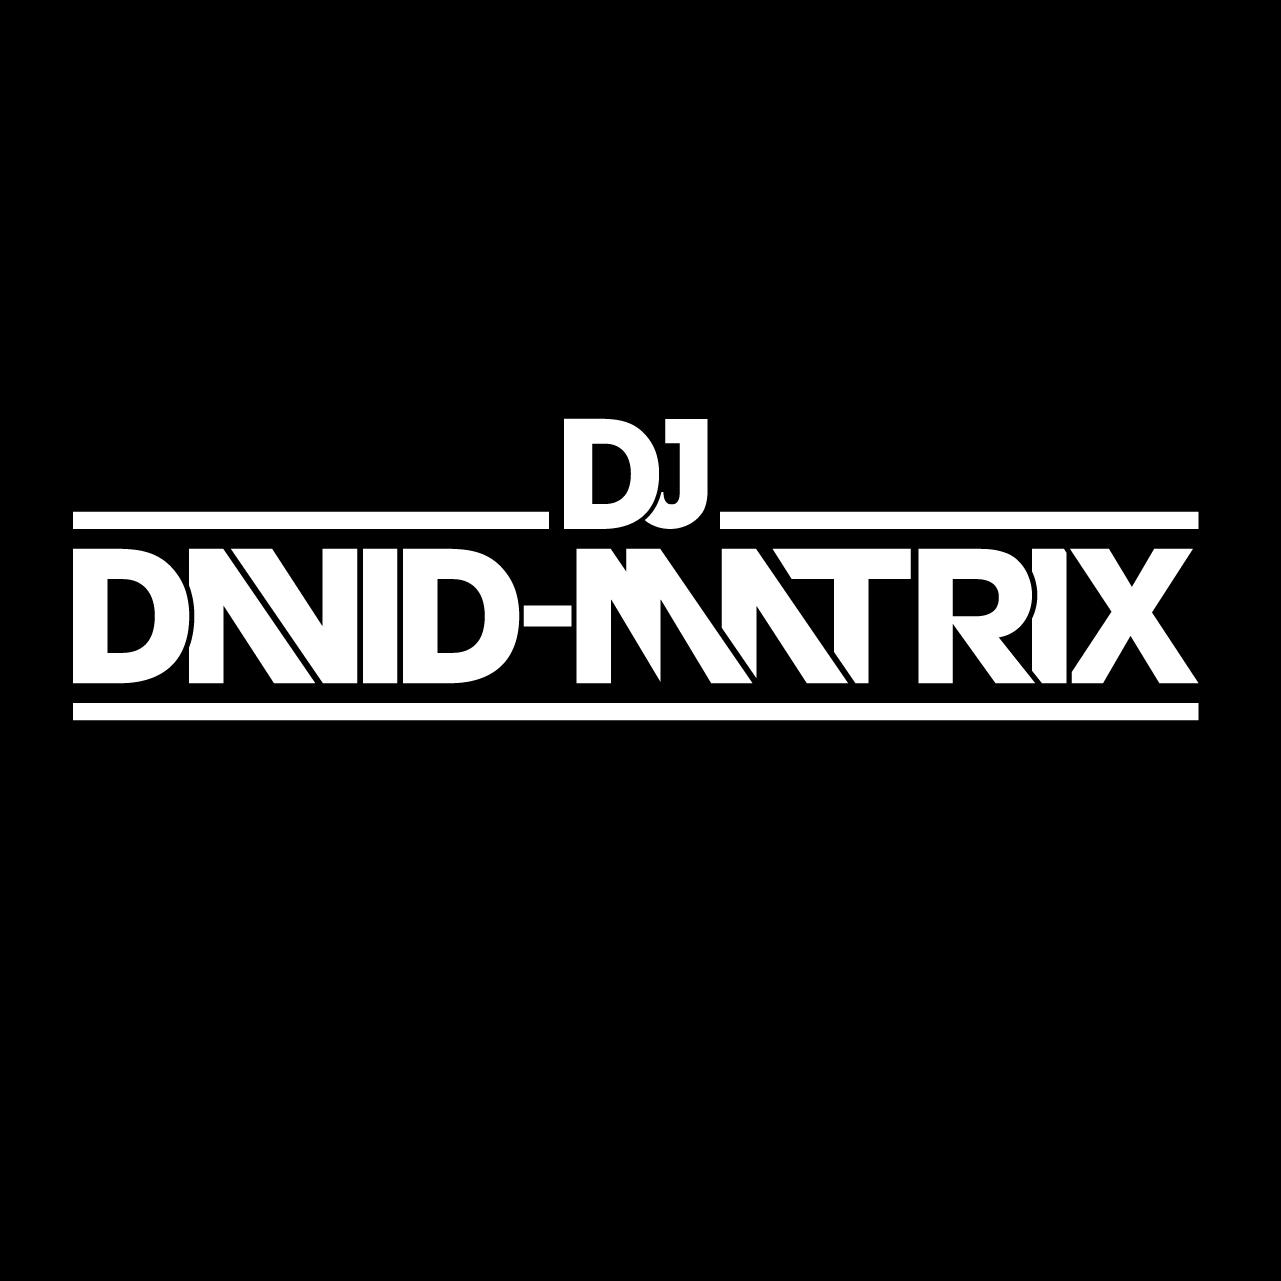 DJ David Matrix